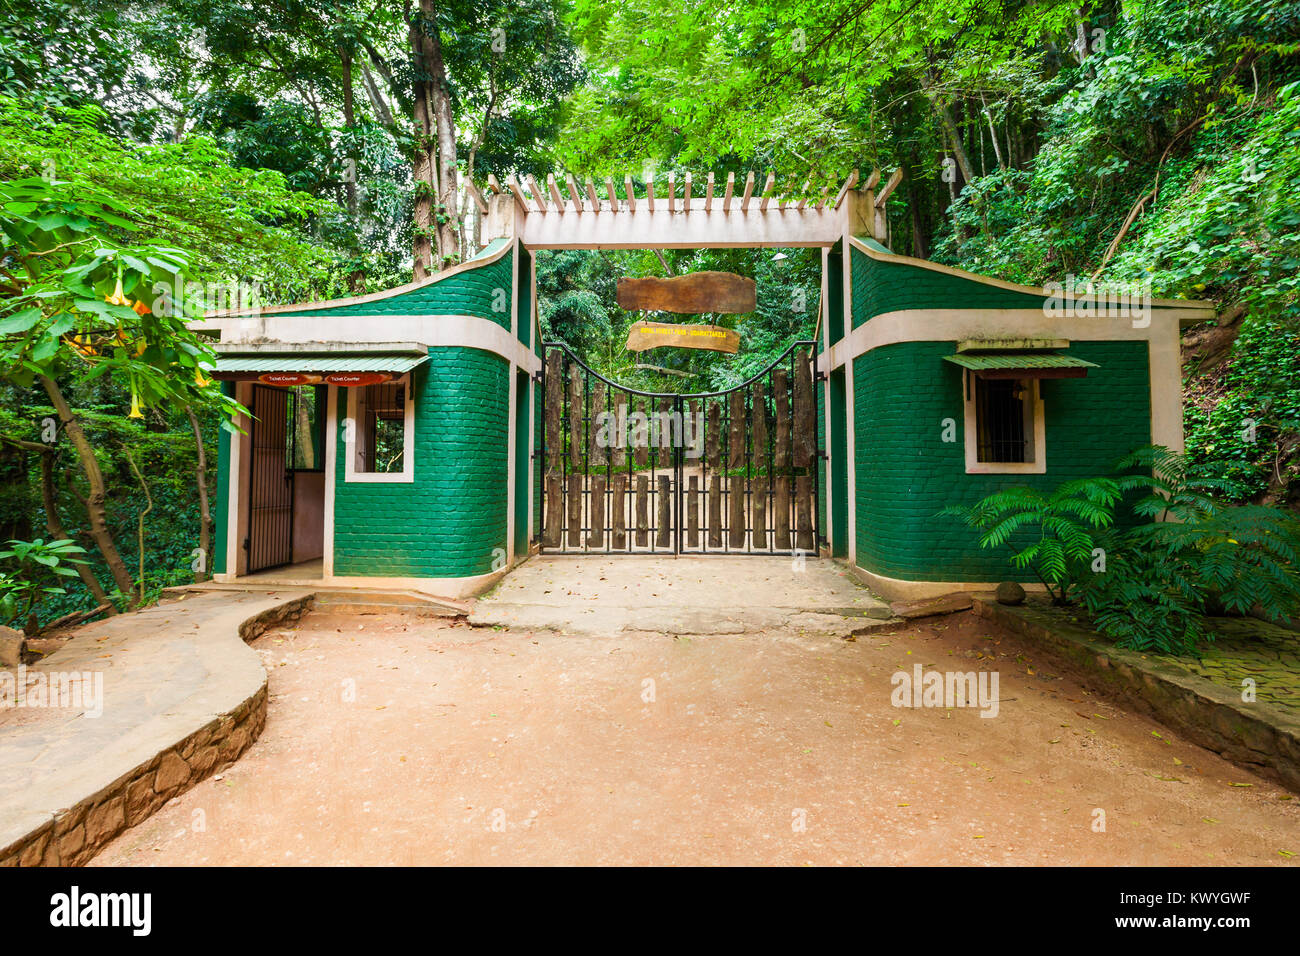 Udawatta Kele Kandy Royal Forest Park ou sanctuaire Udawattakele est une réserve forestière historique sur une crête d'une colline dans la ville de Kandy, Sri Lanka Banque D'Images